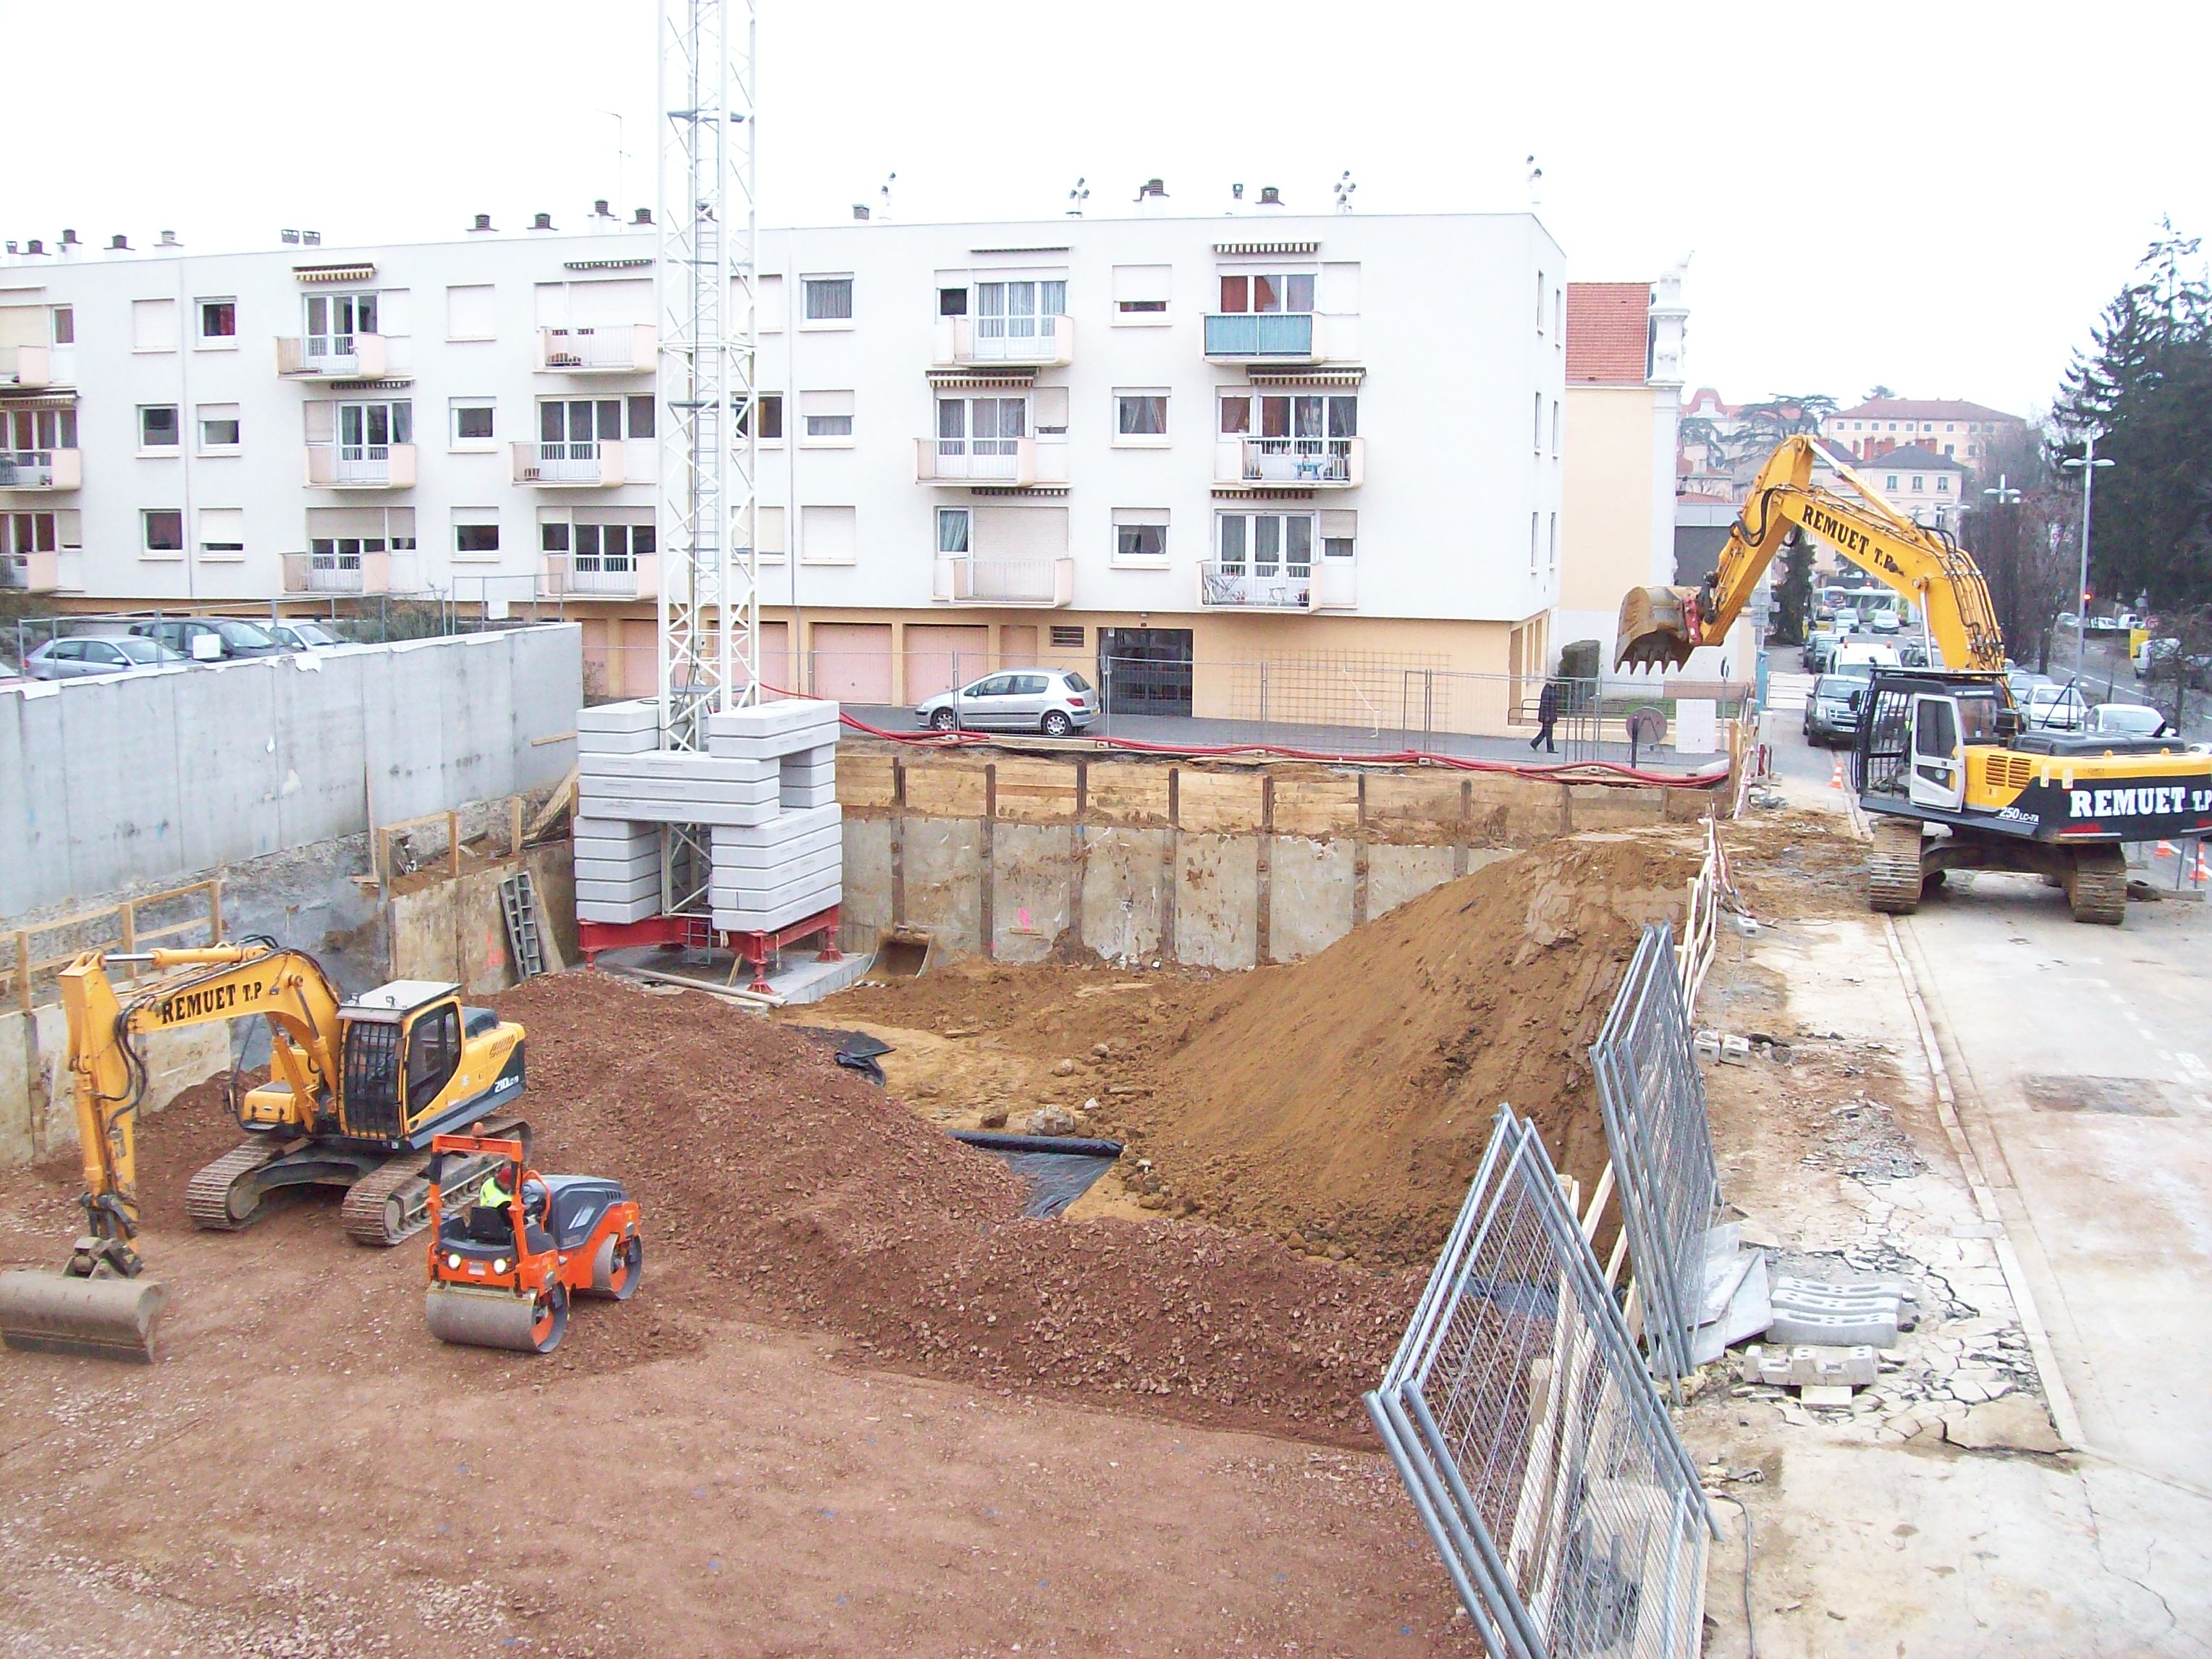 2-chantier10-terrassement-villefranche (2)